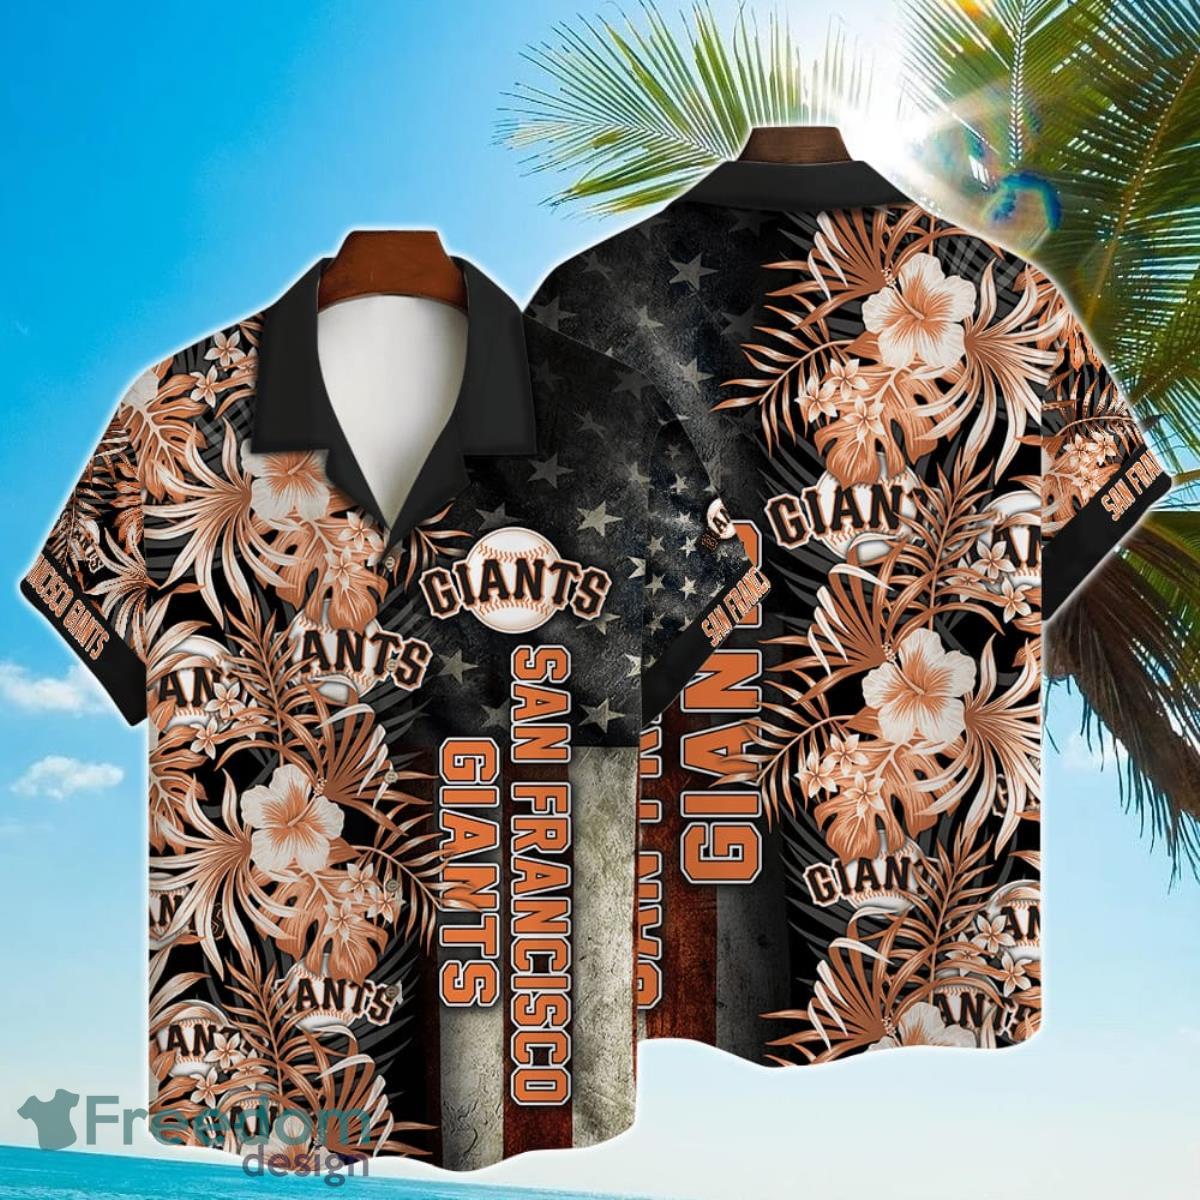 san francisco giants hawaiian shirt